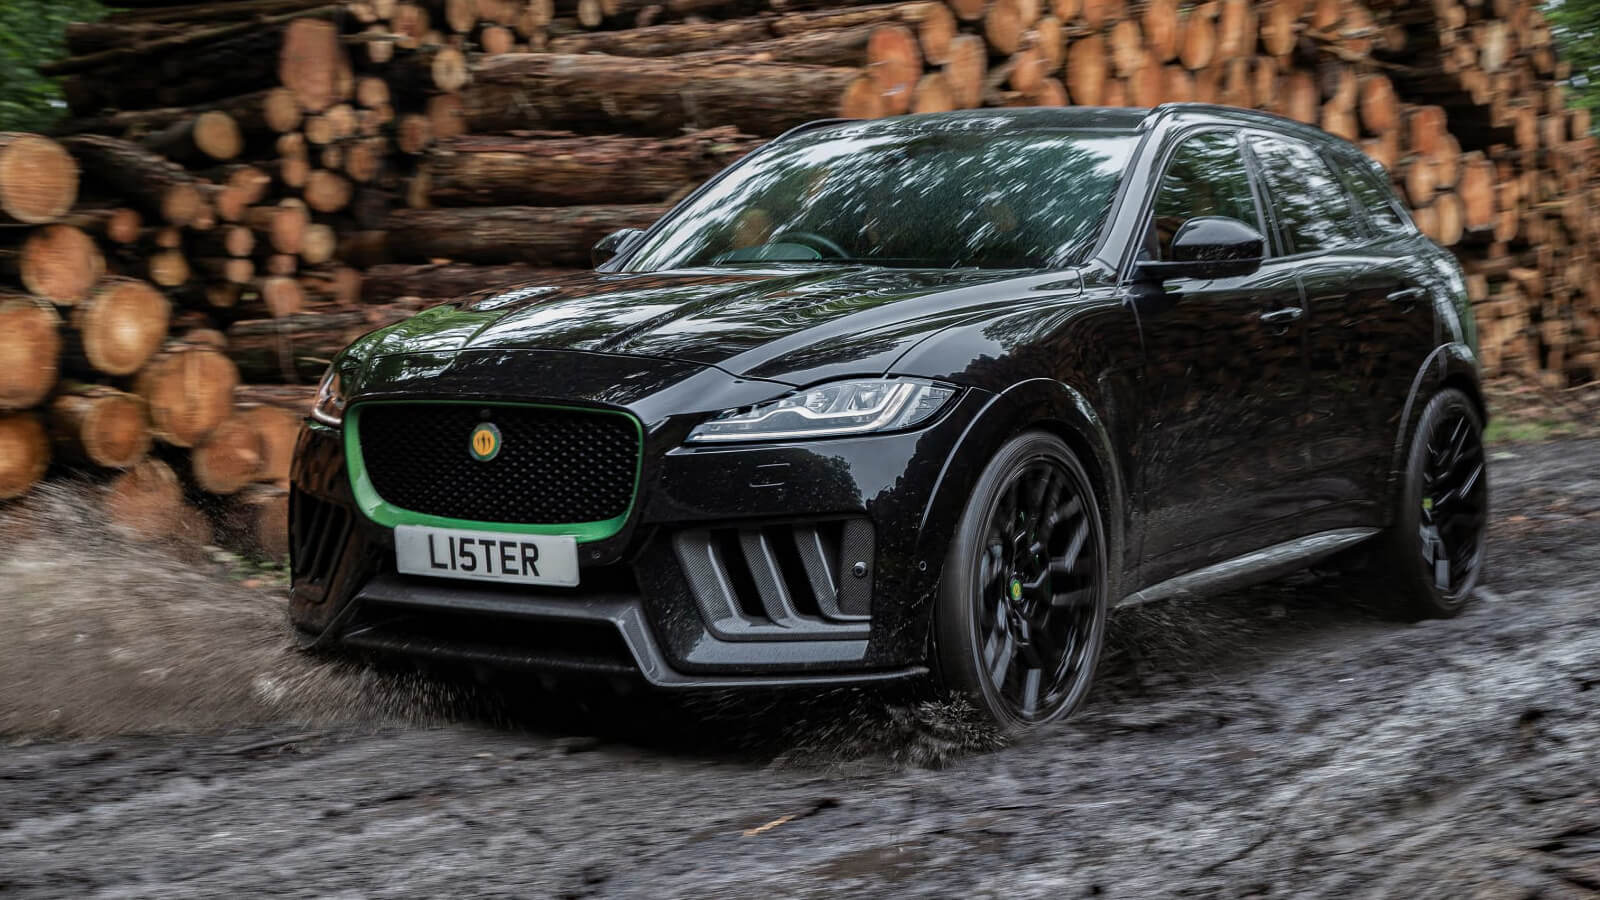  Jaguar Lister Stealth